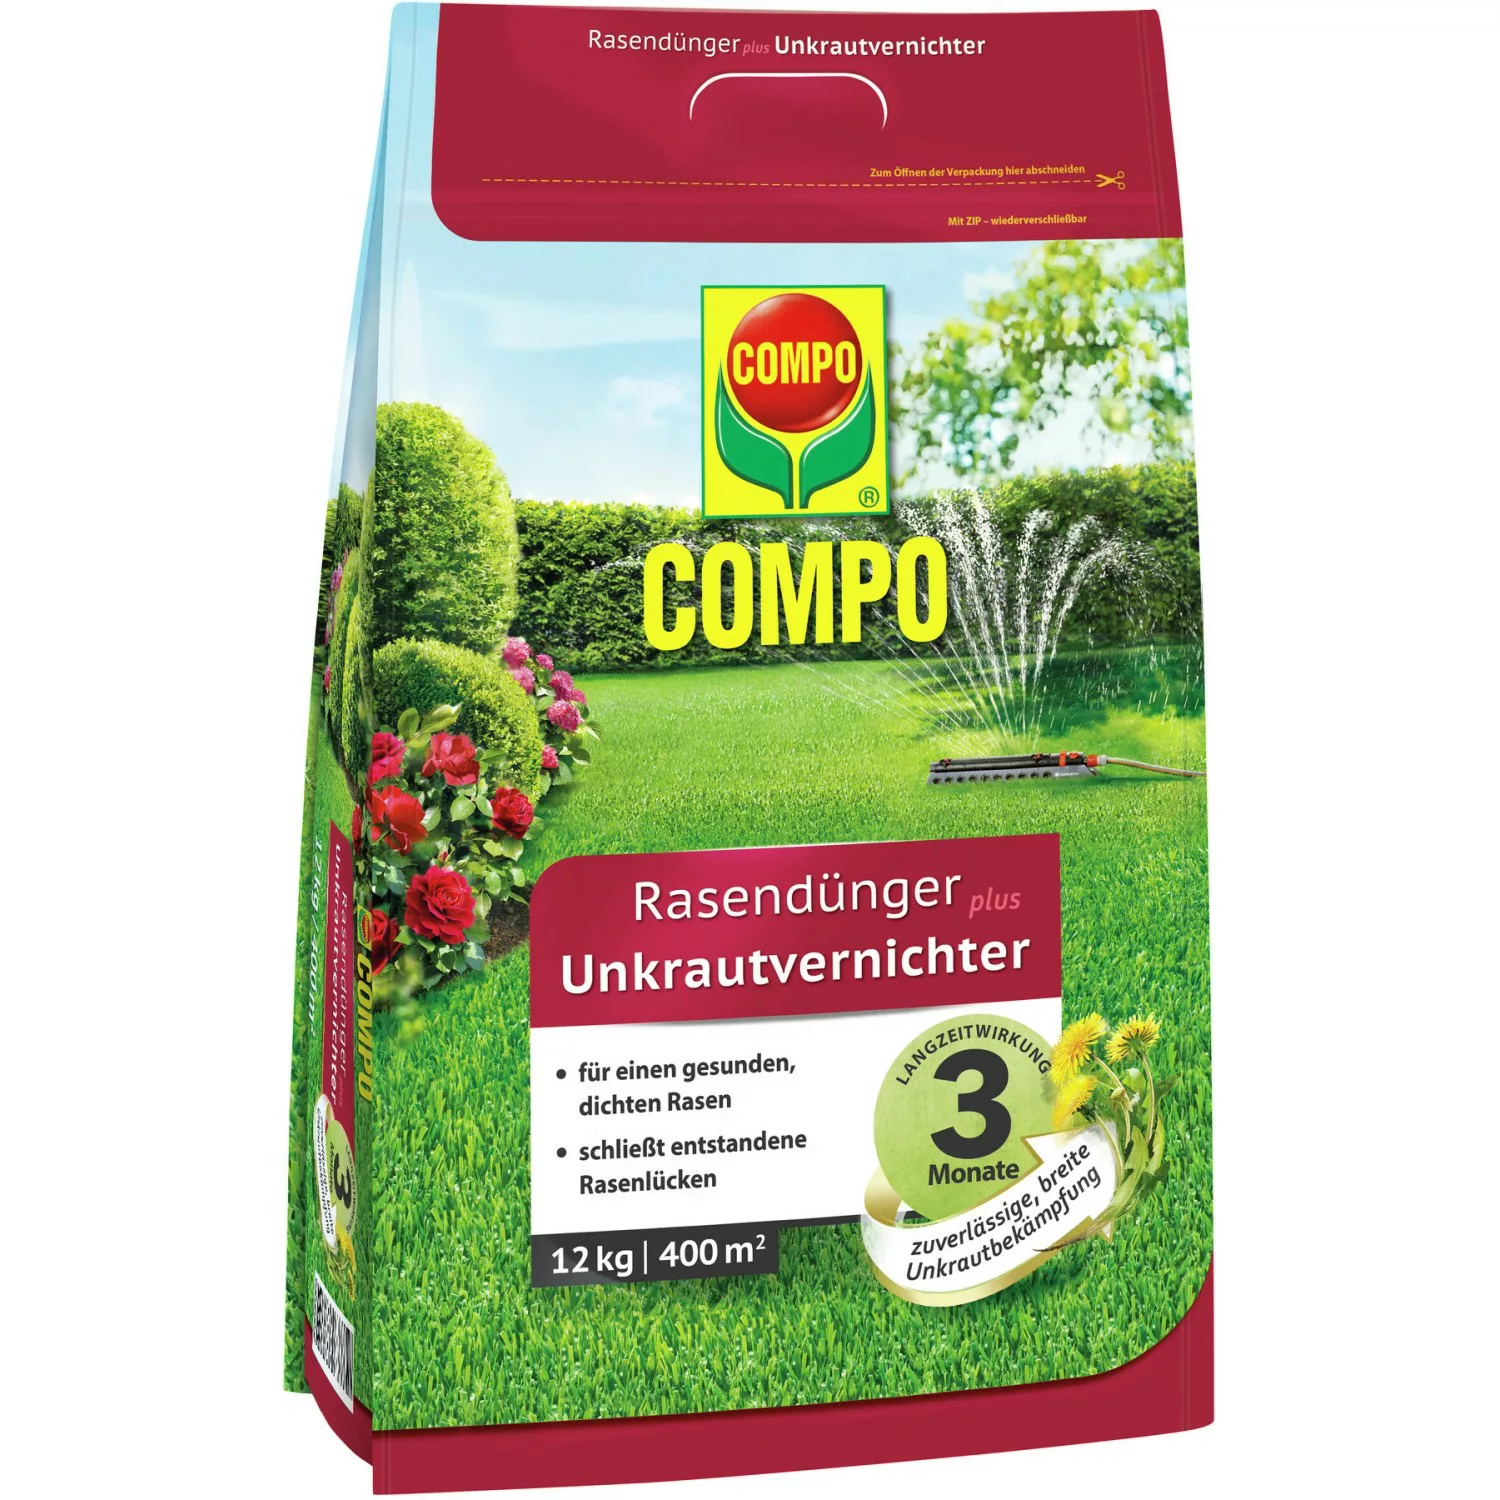 Compo Rasendünger plus Unkrautvernichter 12 kg für 400 m² günstig online kaufen